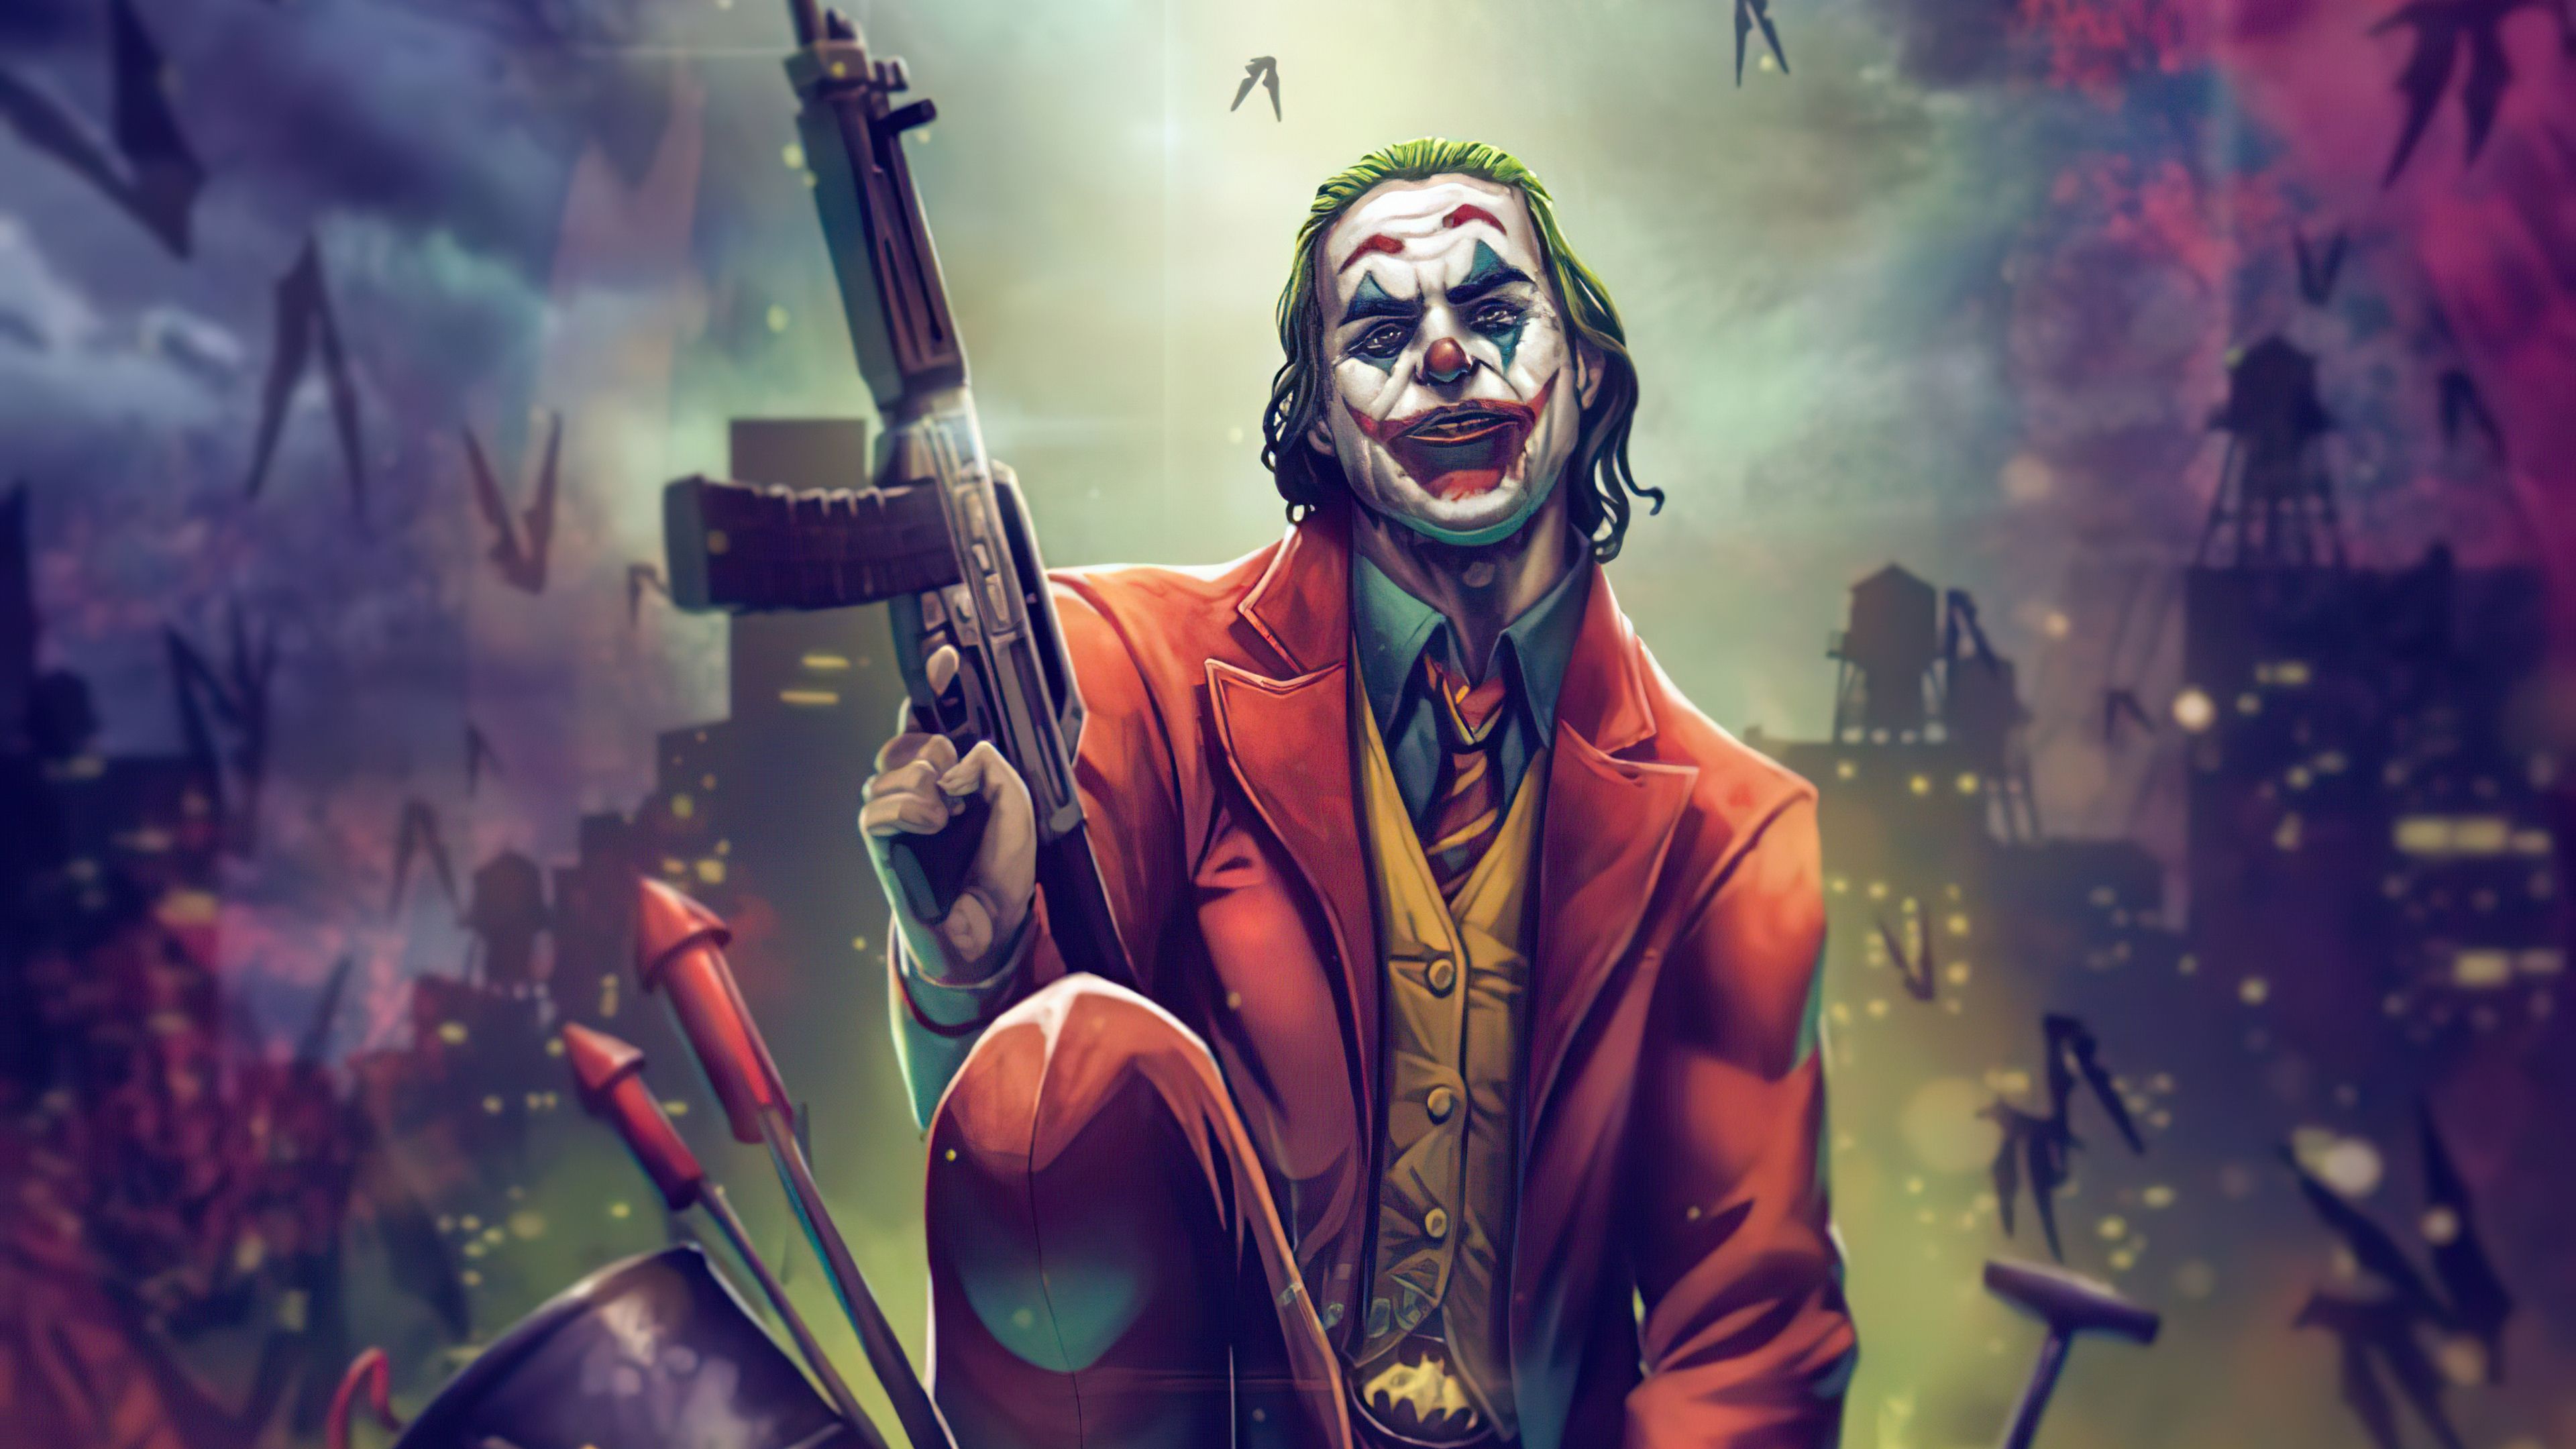 DC Joker Art 2560x1600 Resolution Wallpaper, HD Superheroes 4K Wallpaper